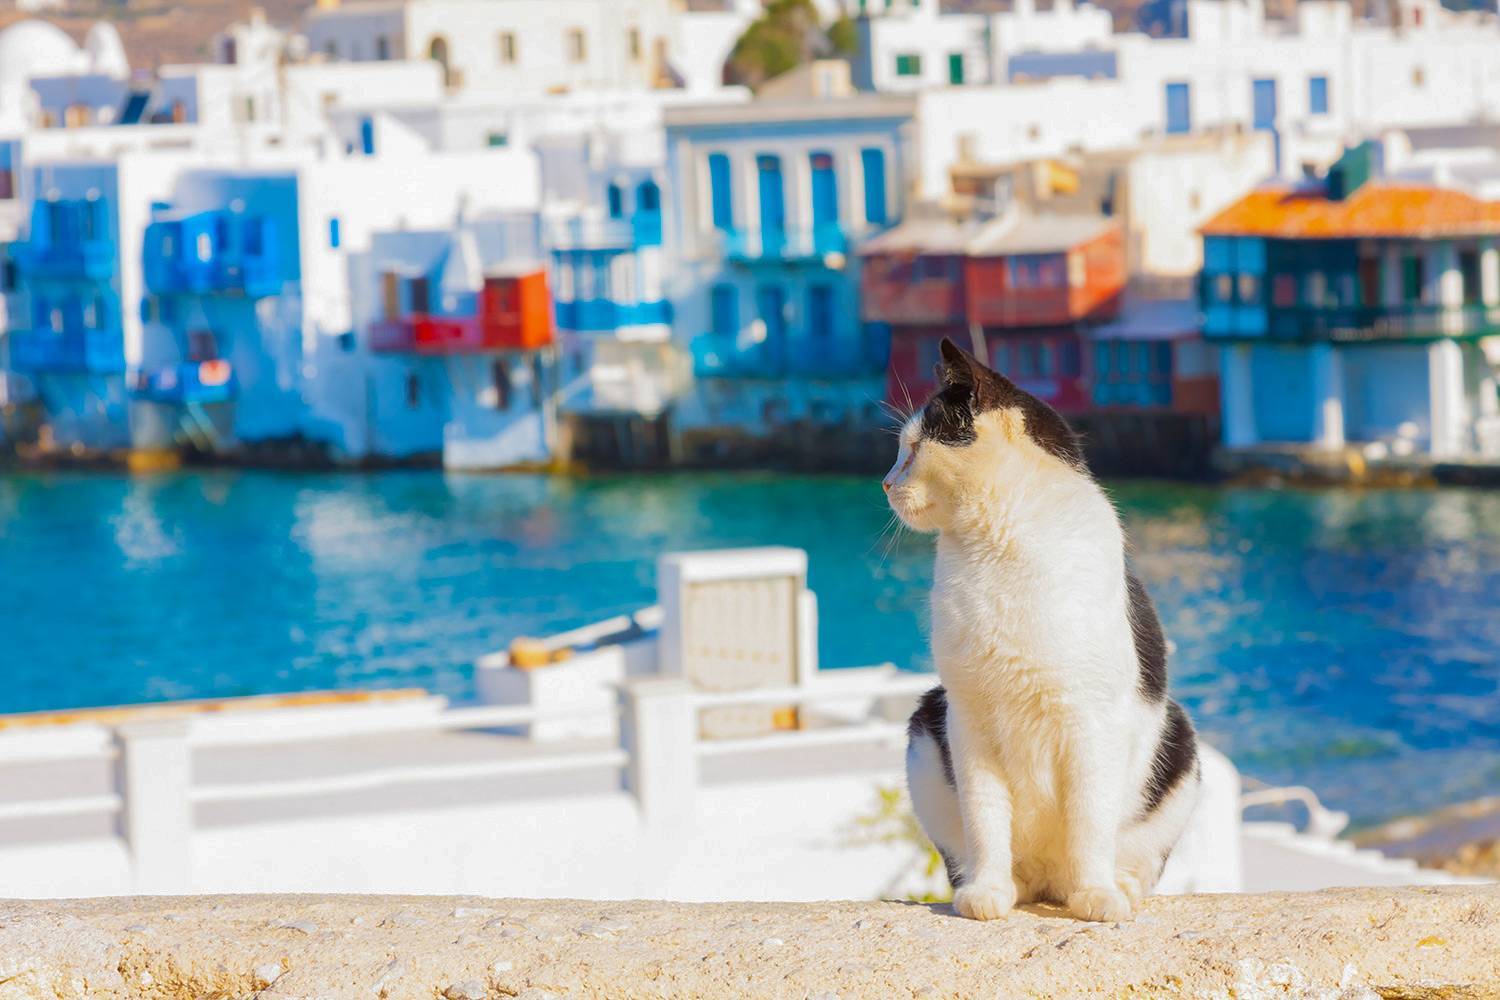 Работа мечты — уход за кошками на греческом острове